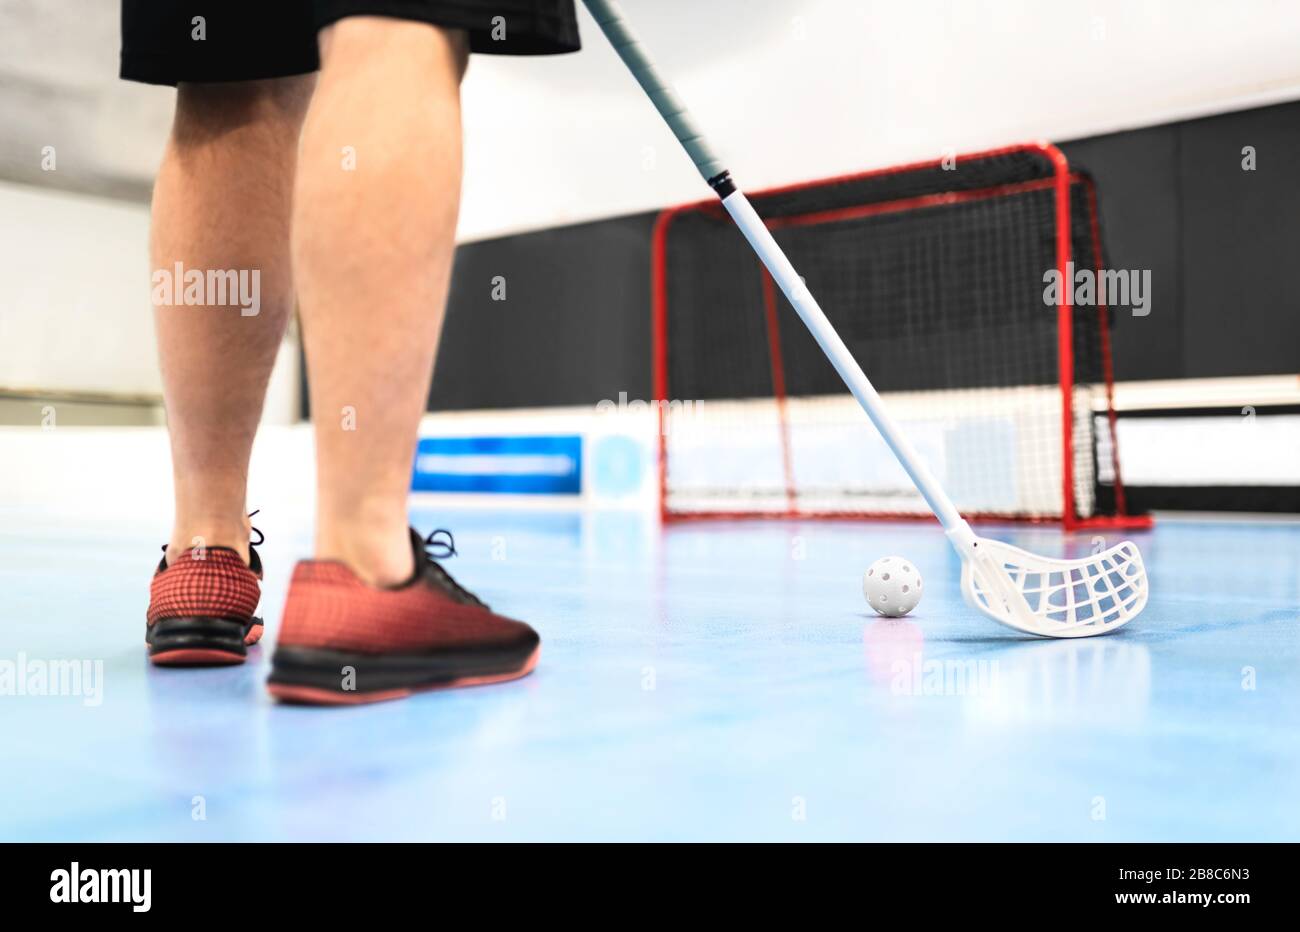 Rückansicht des Floorballspieler-Trainings mit Stock, Ball und Tor auf dem Platz. Mann, der in der Hockeyarena spielt. Stockfoto